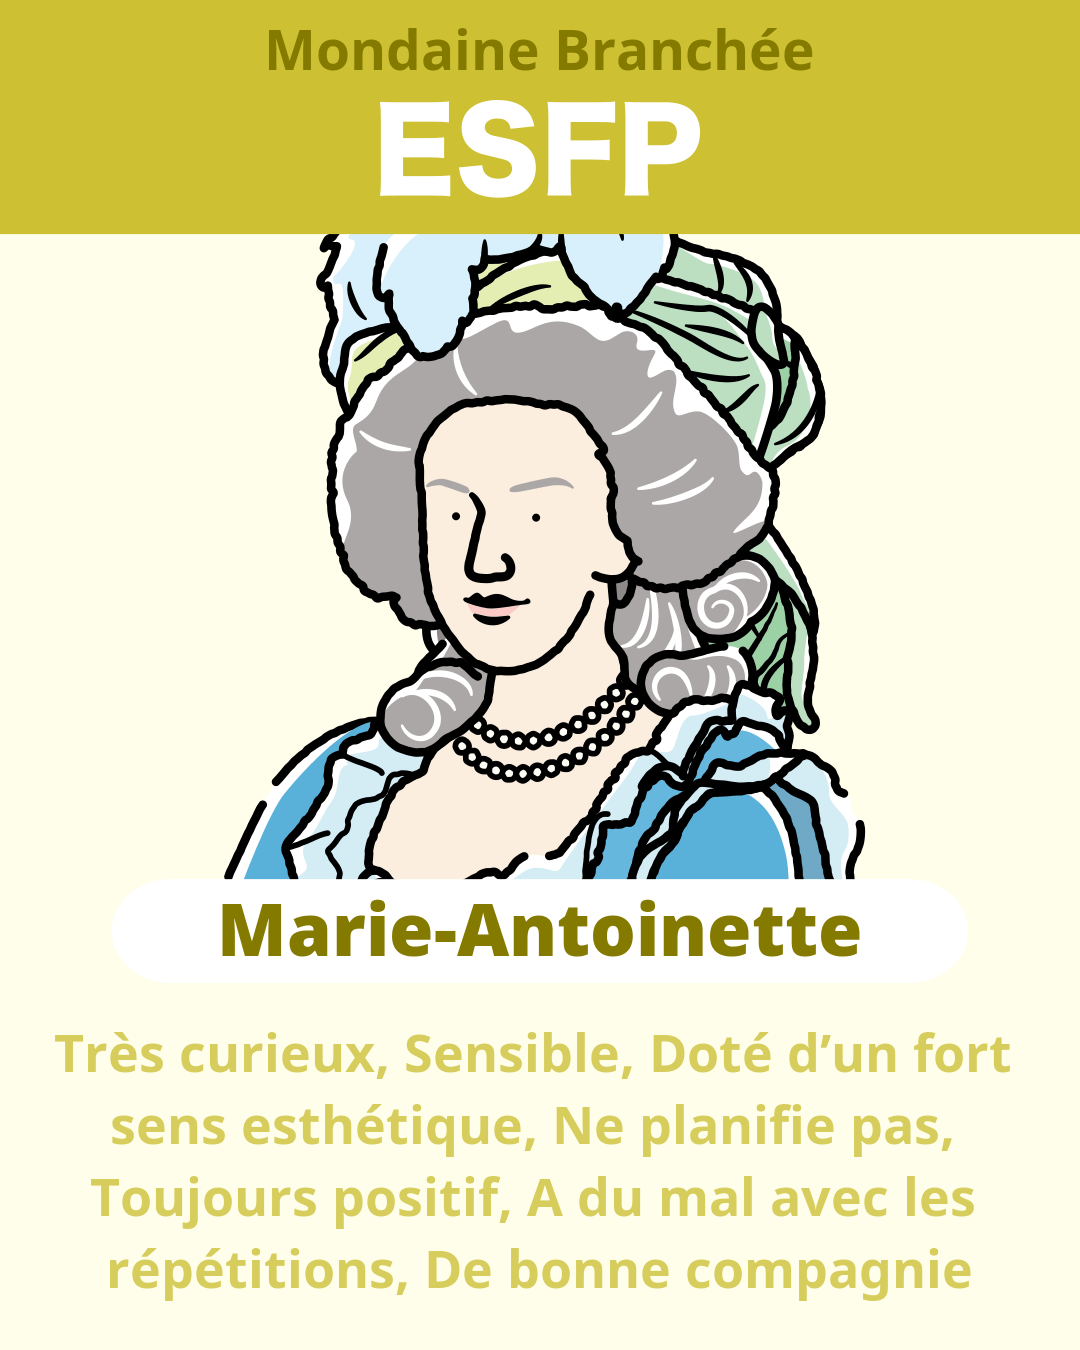 Marie-Antoinette - ESFP